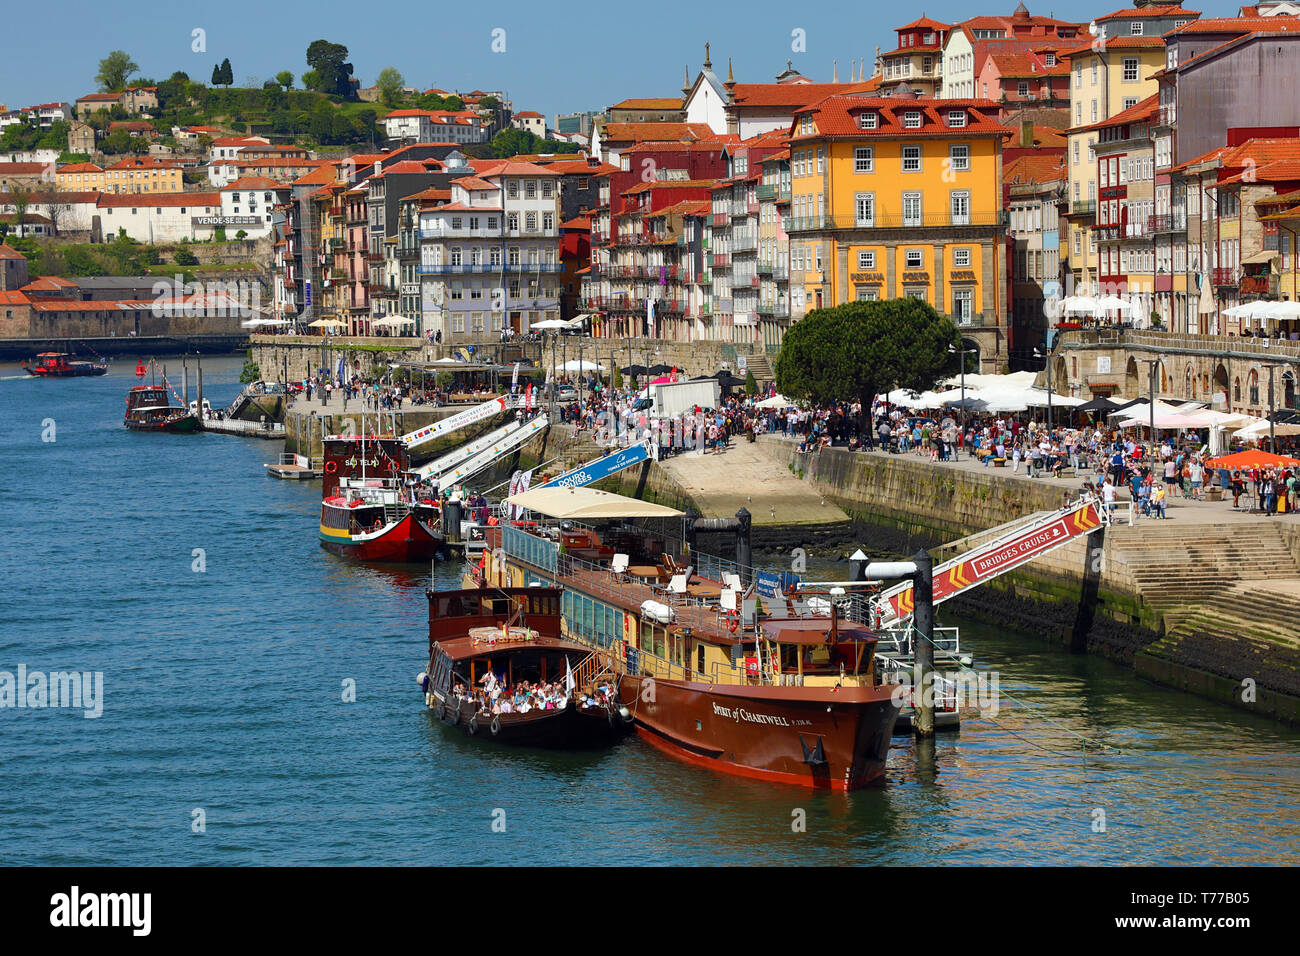 Bateaux de touristes sur le fleuve Douro à Porto, Portugal Banque D'Images